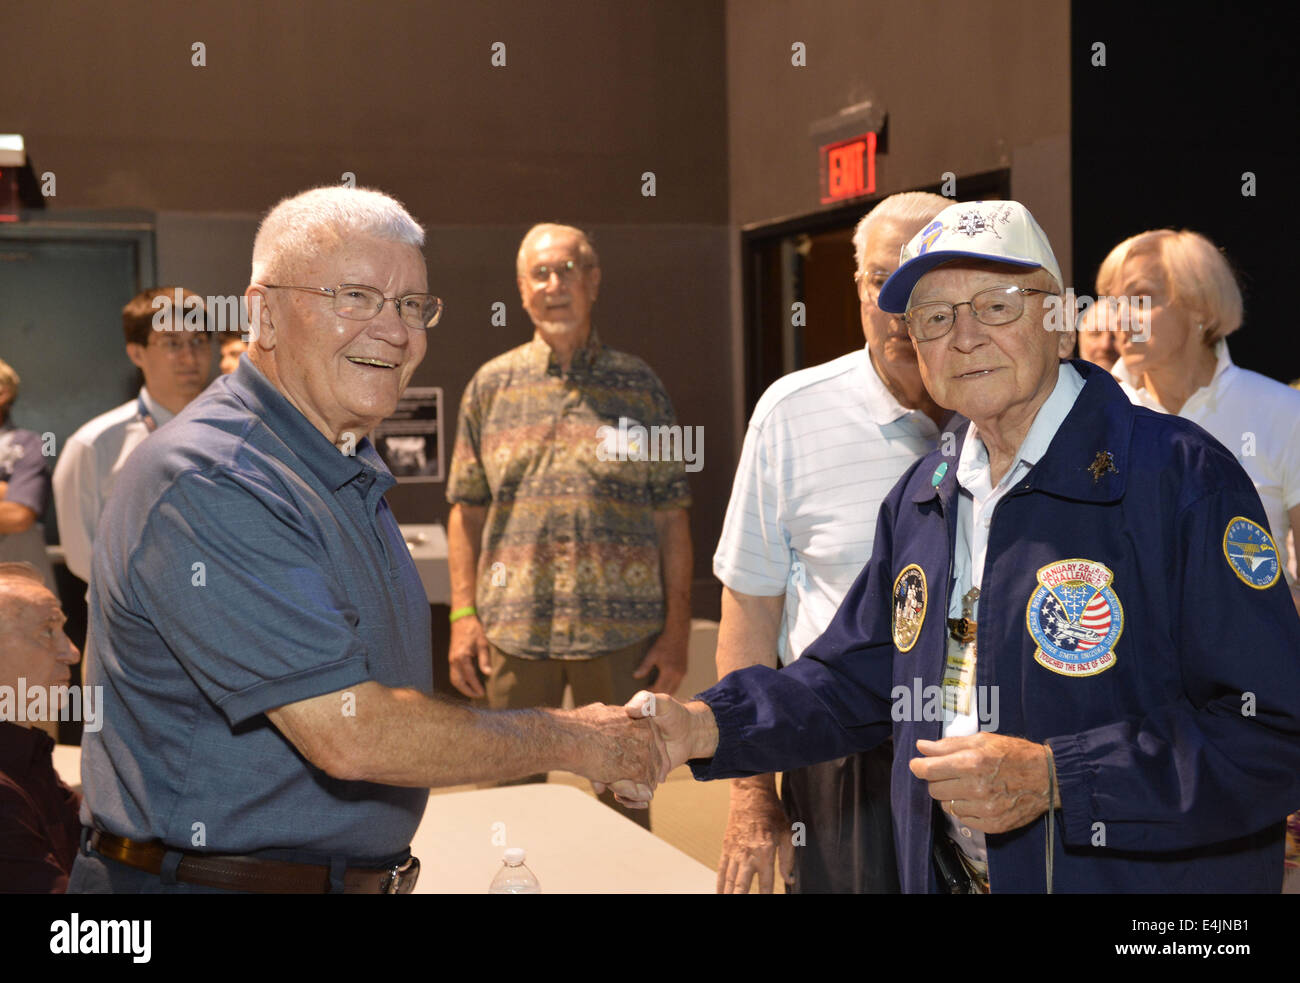 12. Juli 2014 - Garden City, New York, USA - ehemaliger NASA Apollo Astronaut FRED HAISE, ist auf der linken Seite, schütteln Hände mit ERNIE FINAMORE, 88, Massapequa Park, am Sommer von 69 Feier Veranstaltung im Long Island Cradle of Aviation Museum, auf der 45. Jahrestag der NASA Apollo 11 LEM 20. Juli 1969 auf dem Mond landen. Finamore, war ein QC-Qualitätskontrolle-Inspektor für die Mondfähre Ausflug von 1965 bis 1971. Haise, der Pilot der Mondlandefähre Apollo 13-Mission, war im LEM Raum während der Wiedervereinigung der ehemaligen Mitarbeiter von Northrop Grumman Aerospace Corporation. (Kredit-Bild: © Ann Parry / Stockfoto